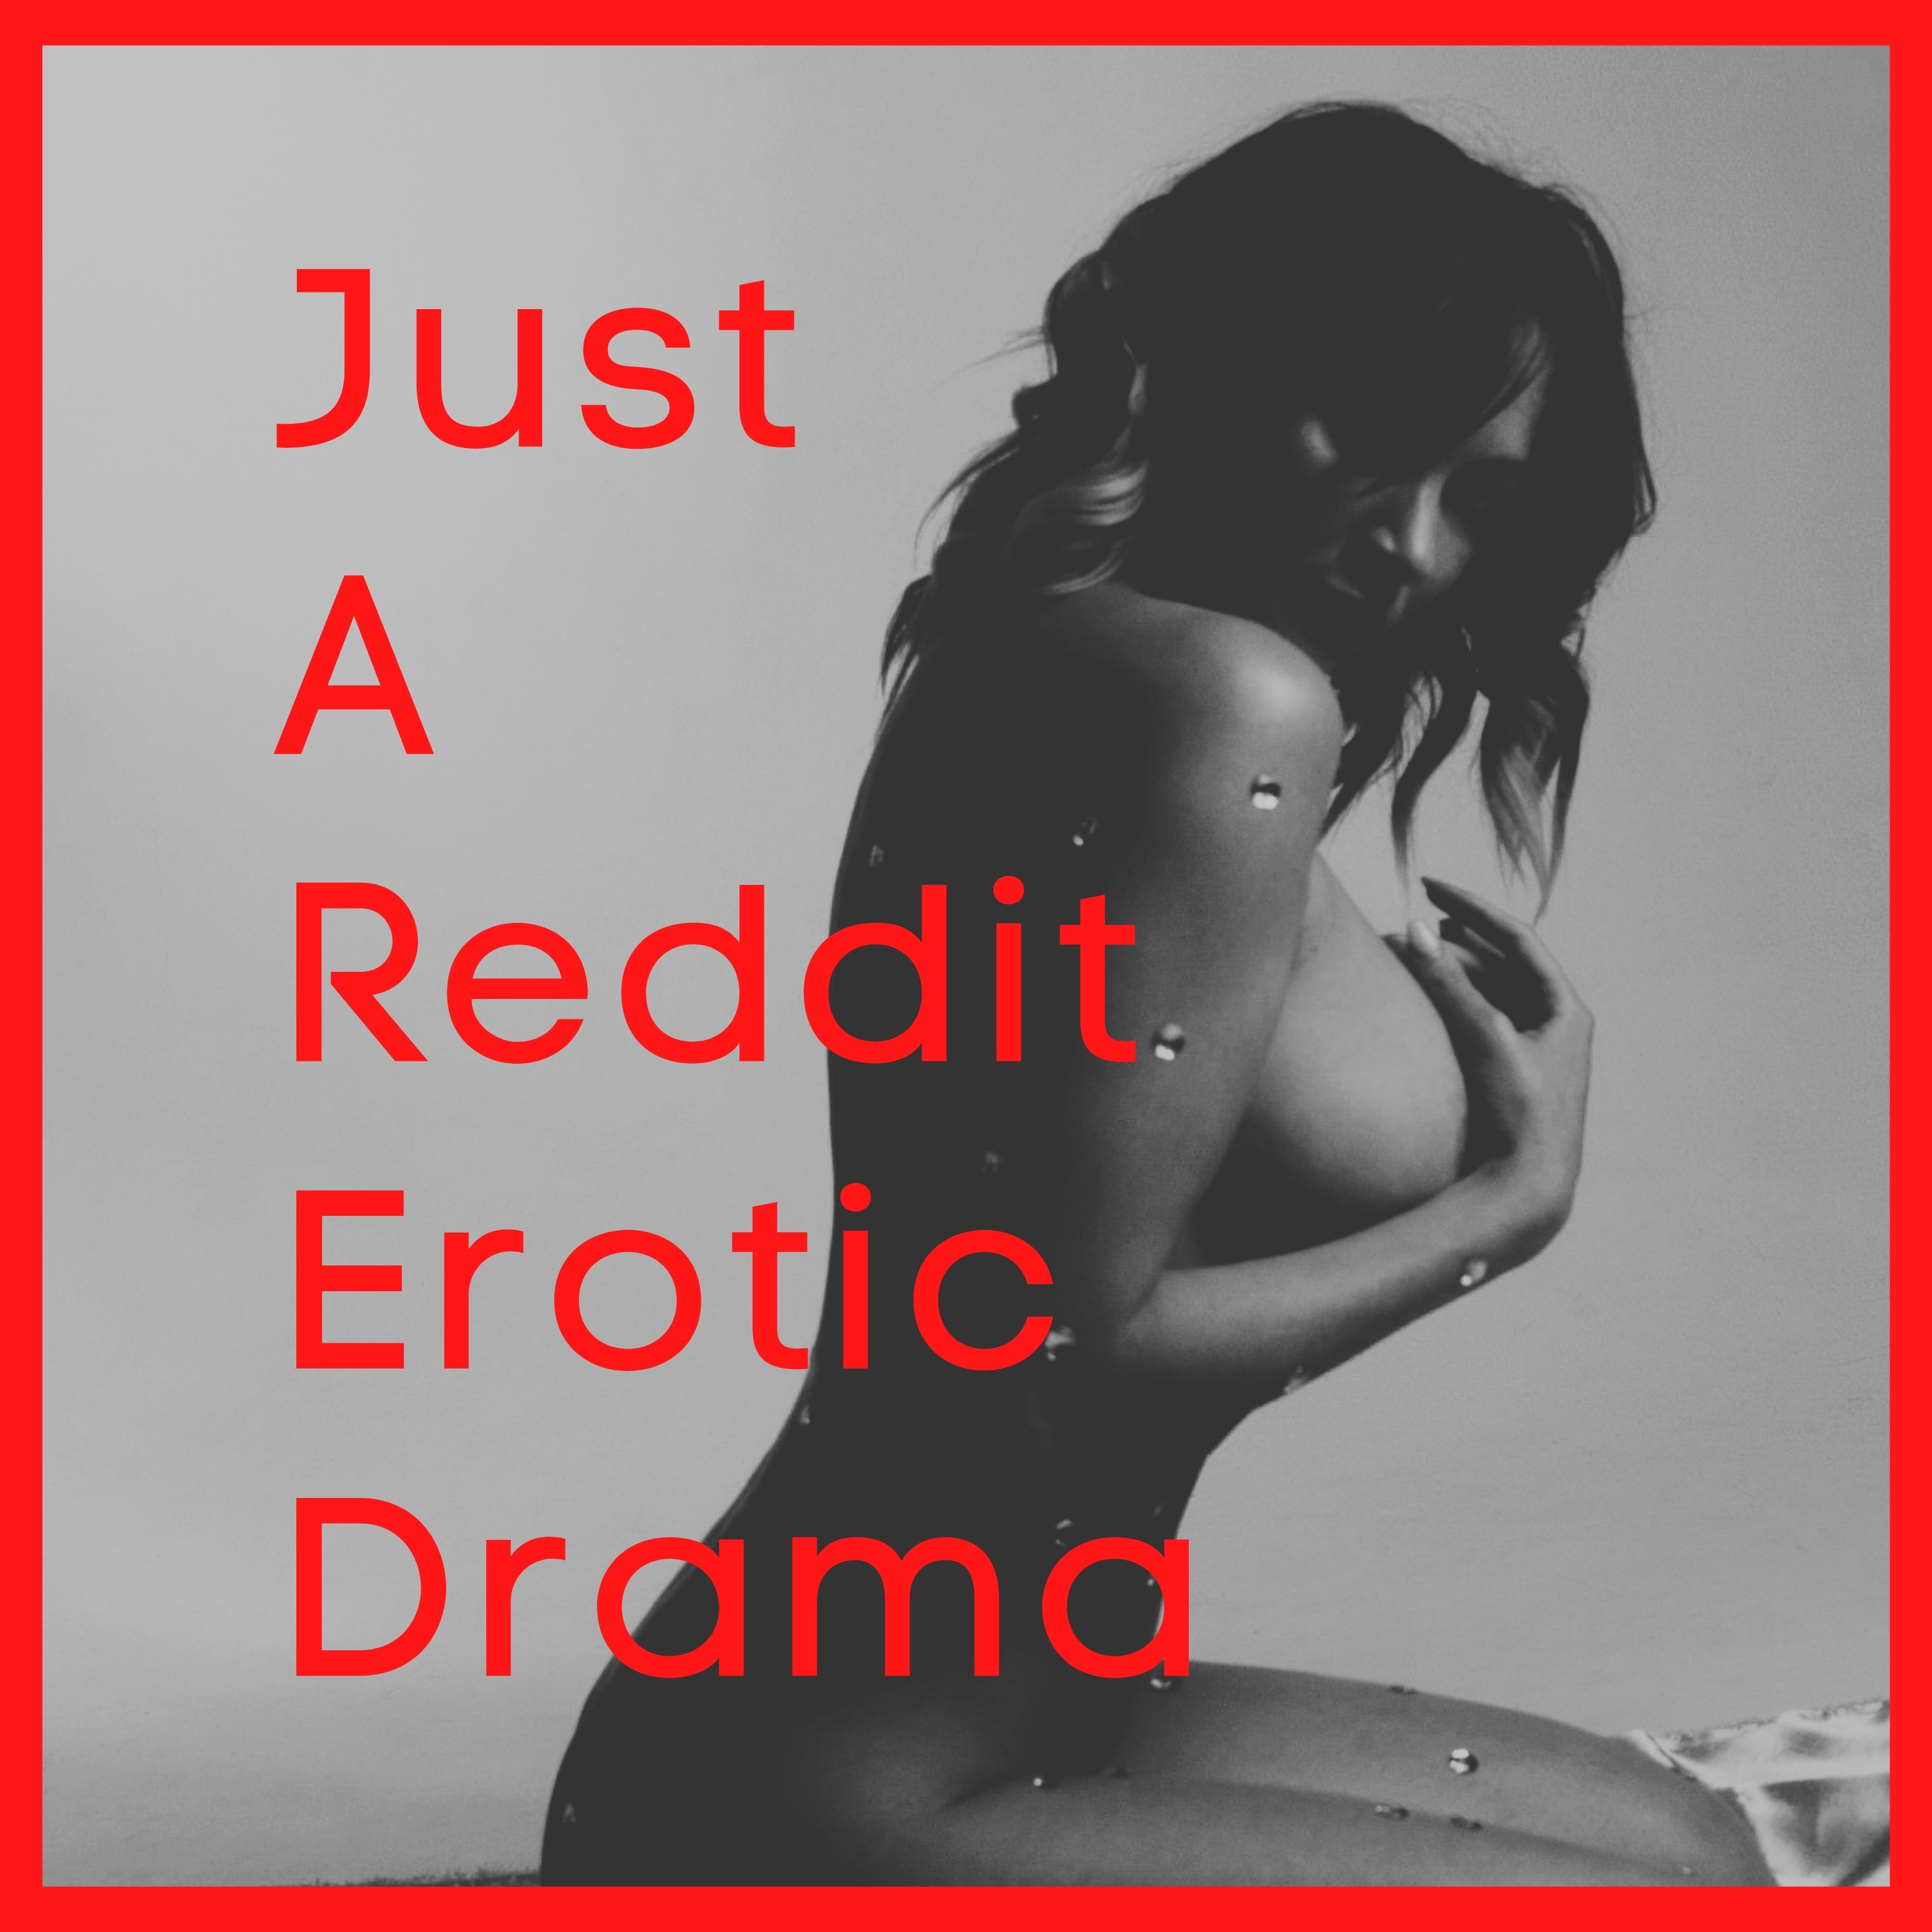 Just A Reddit Erotic Drama RedCircle photo